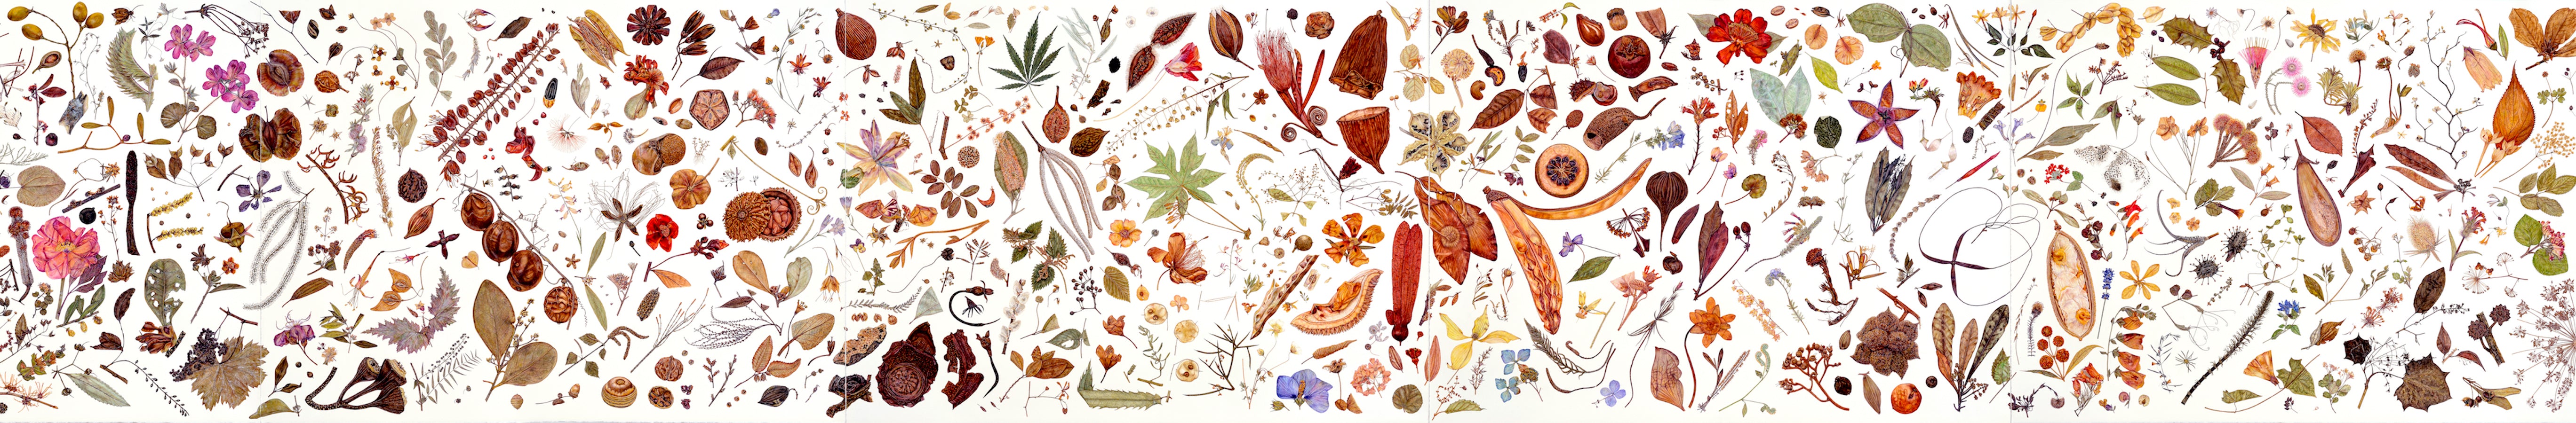 Artifact Puzzles - Rachel Pedder-Smith Herbarium Wooden Jigsaw Puzzle